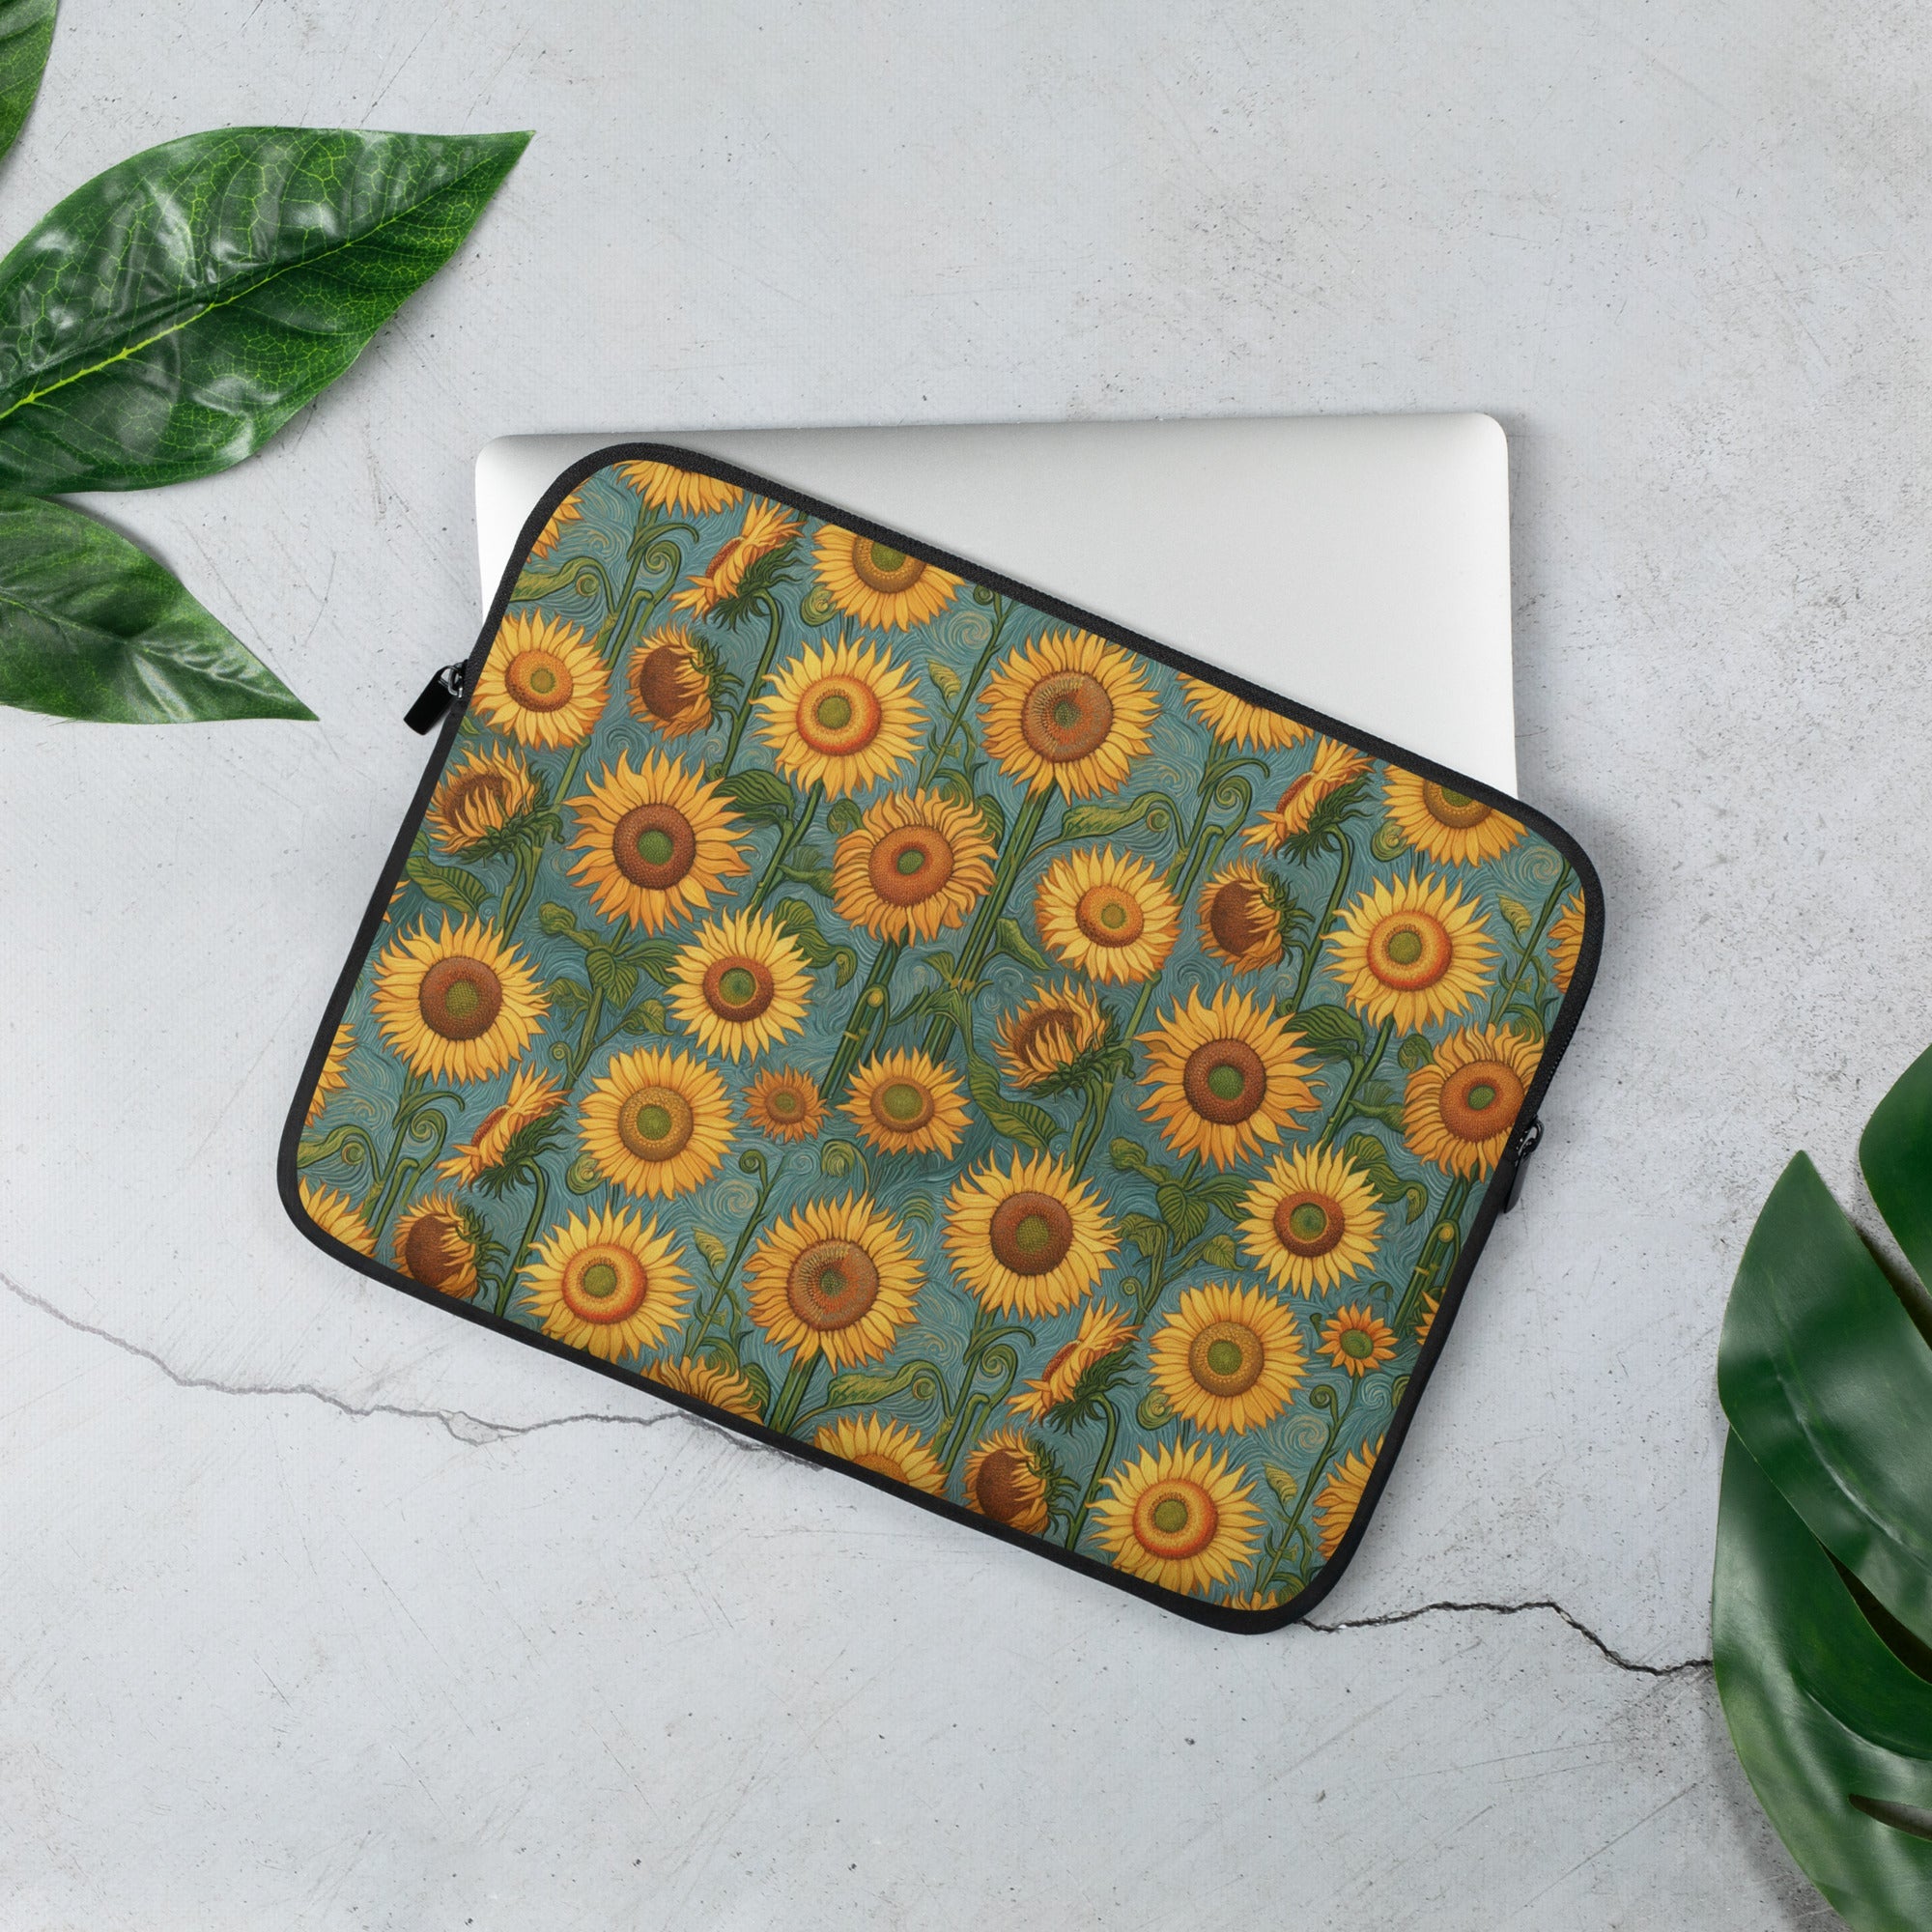 Vincent van Gogh 'Sunflowers' Famous Painting Laptop Sleeve | Premium Art Laptop Sleeve 13"/15"